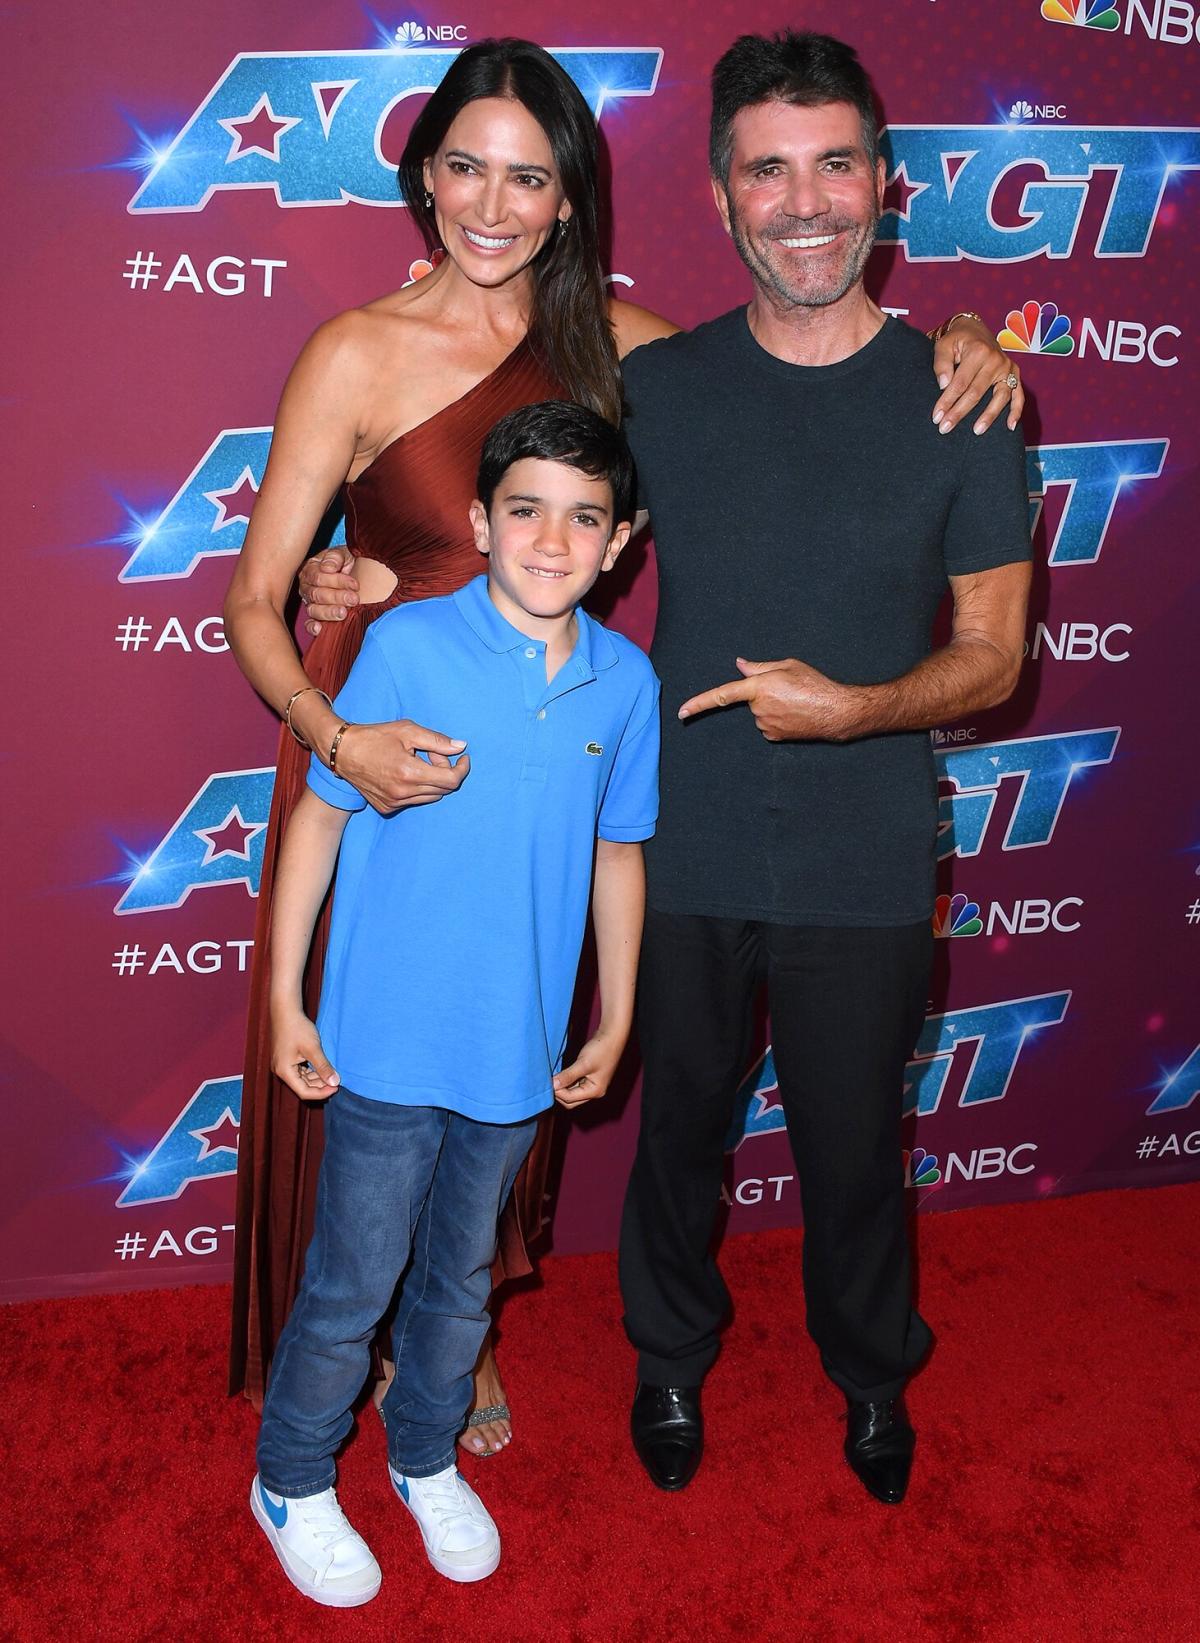 Le fils de Simon Cowell, Eric, 8 ans, a l’air d’avoir grandi alors qu’il rejoint papa à la finale de “America’s Got Talent”